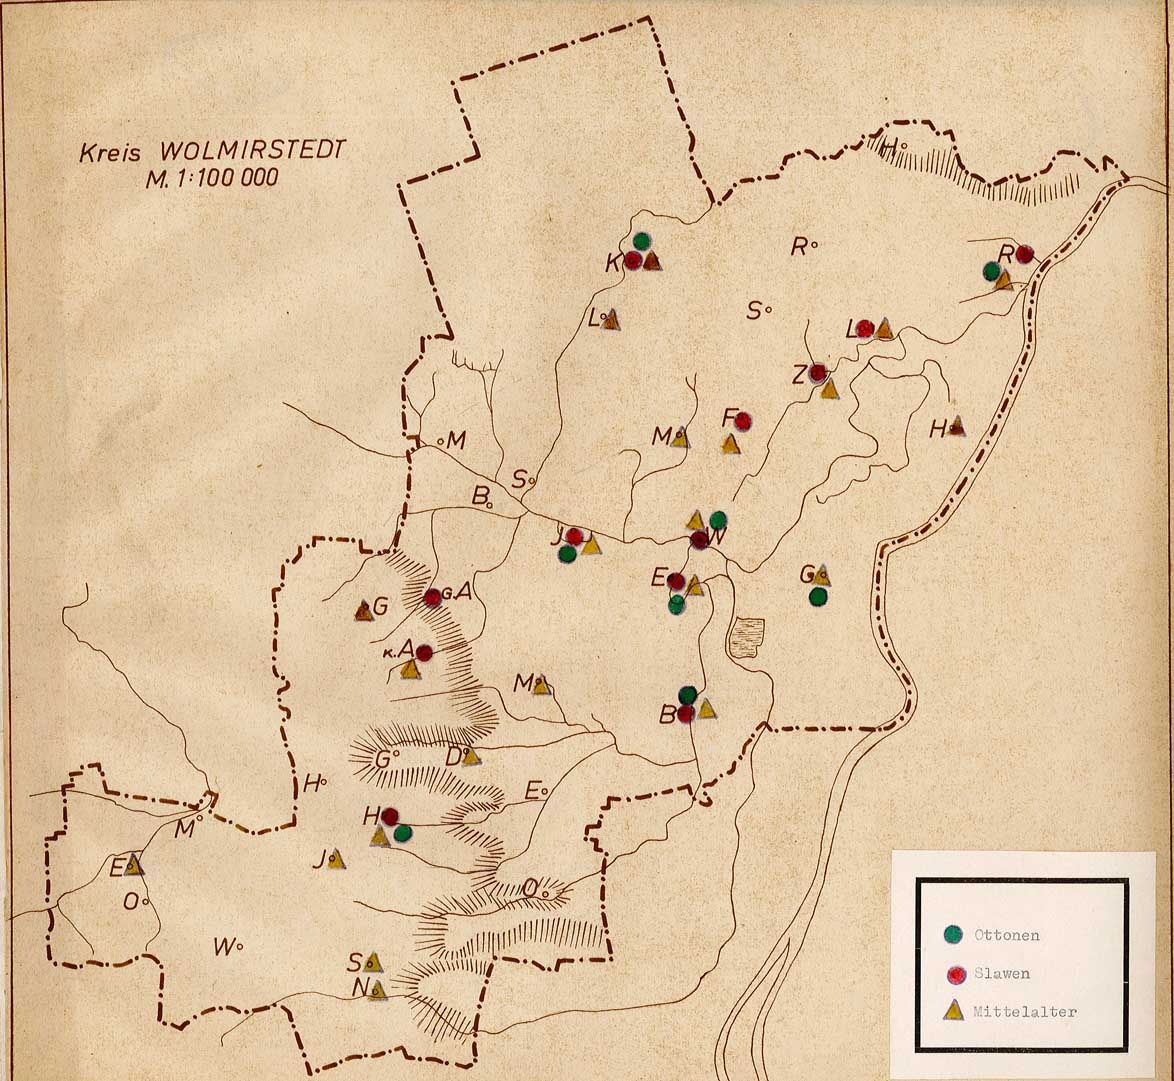 Karte archäologischer Funde der Ottonen, Slawen und des Mittelalters im Kreis Wolmirstedt (Museum Wolmirstedt RR-F)